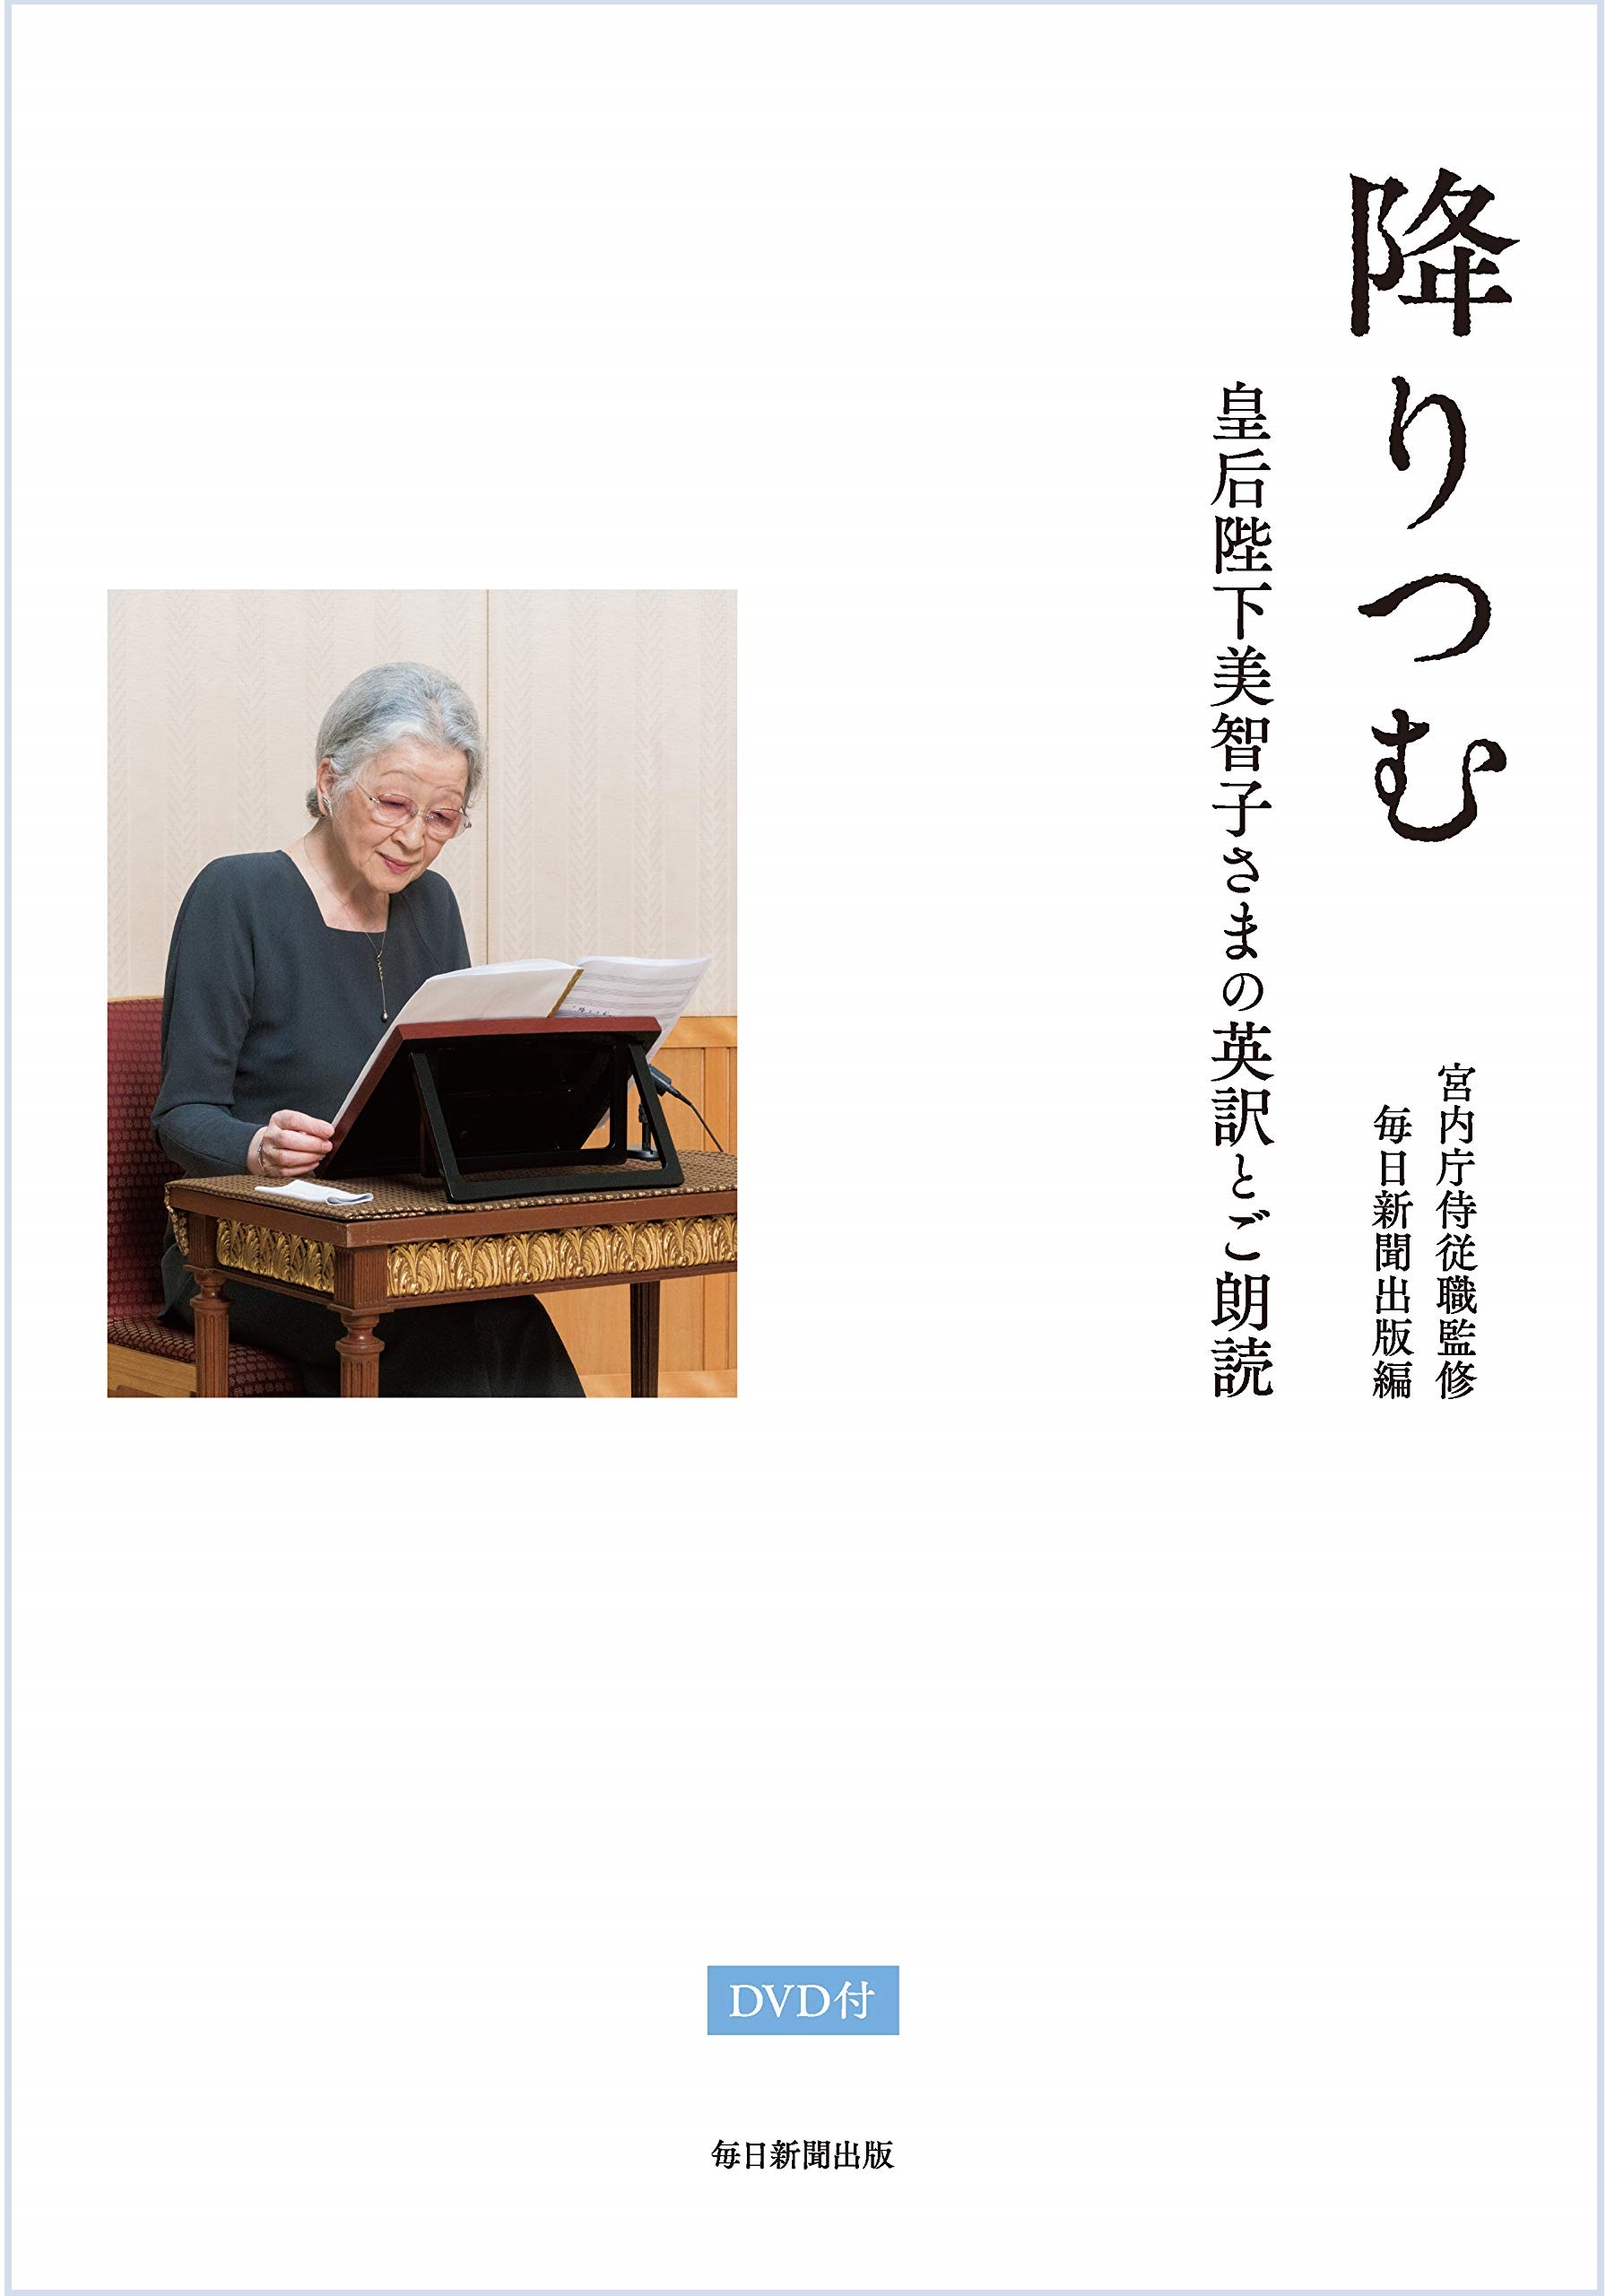 読んで、聴いてみよう、この1冊～『降りつむ：皇后陛下美智子さまの英訳とご朗読』～